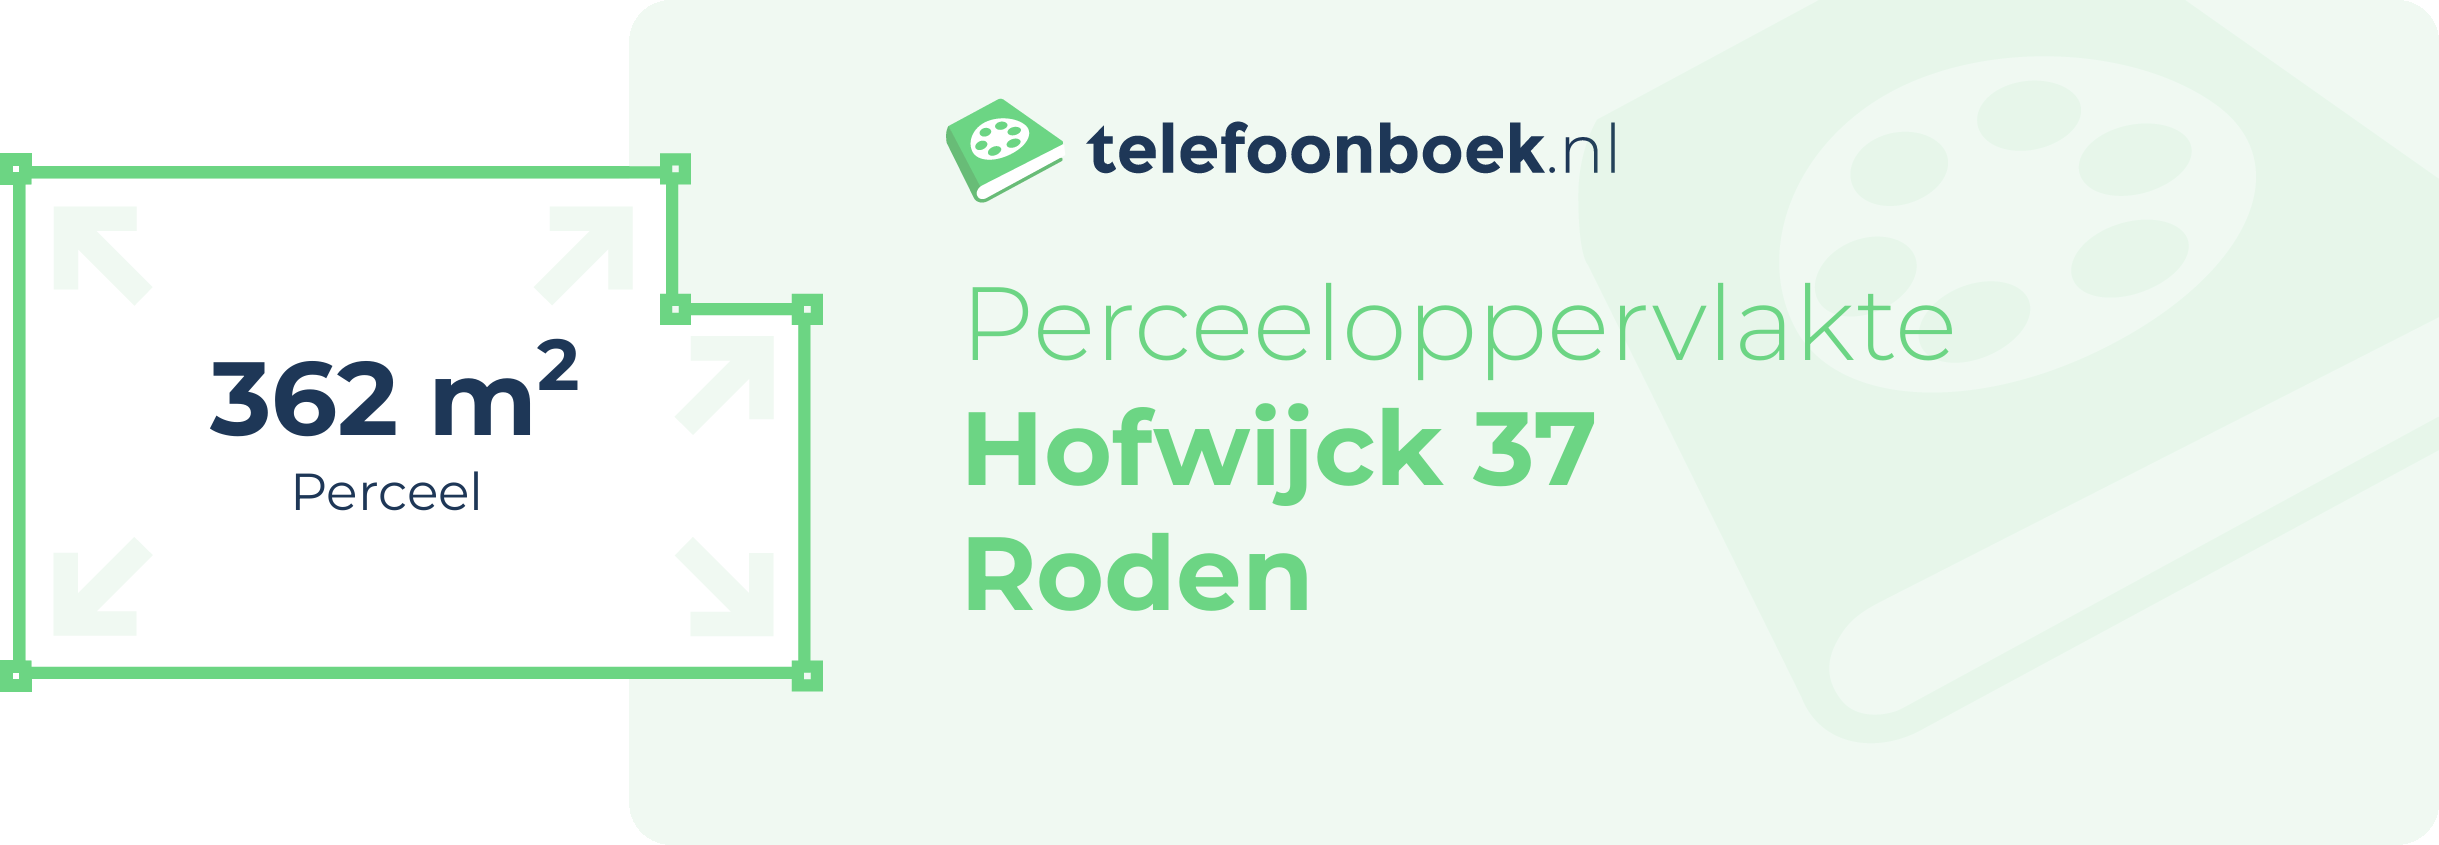 Perceeloppervlakte Hofwijck 37 Roden